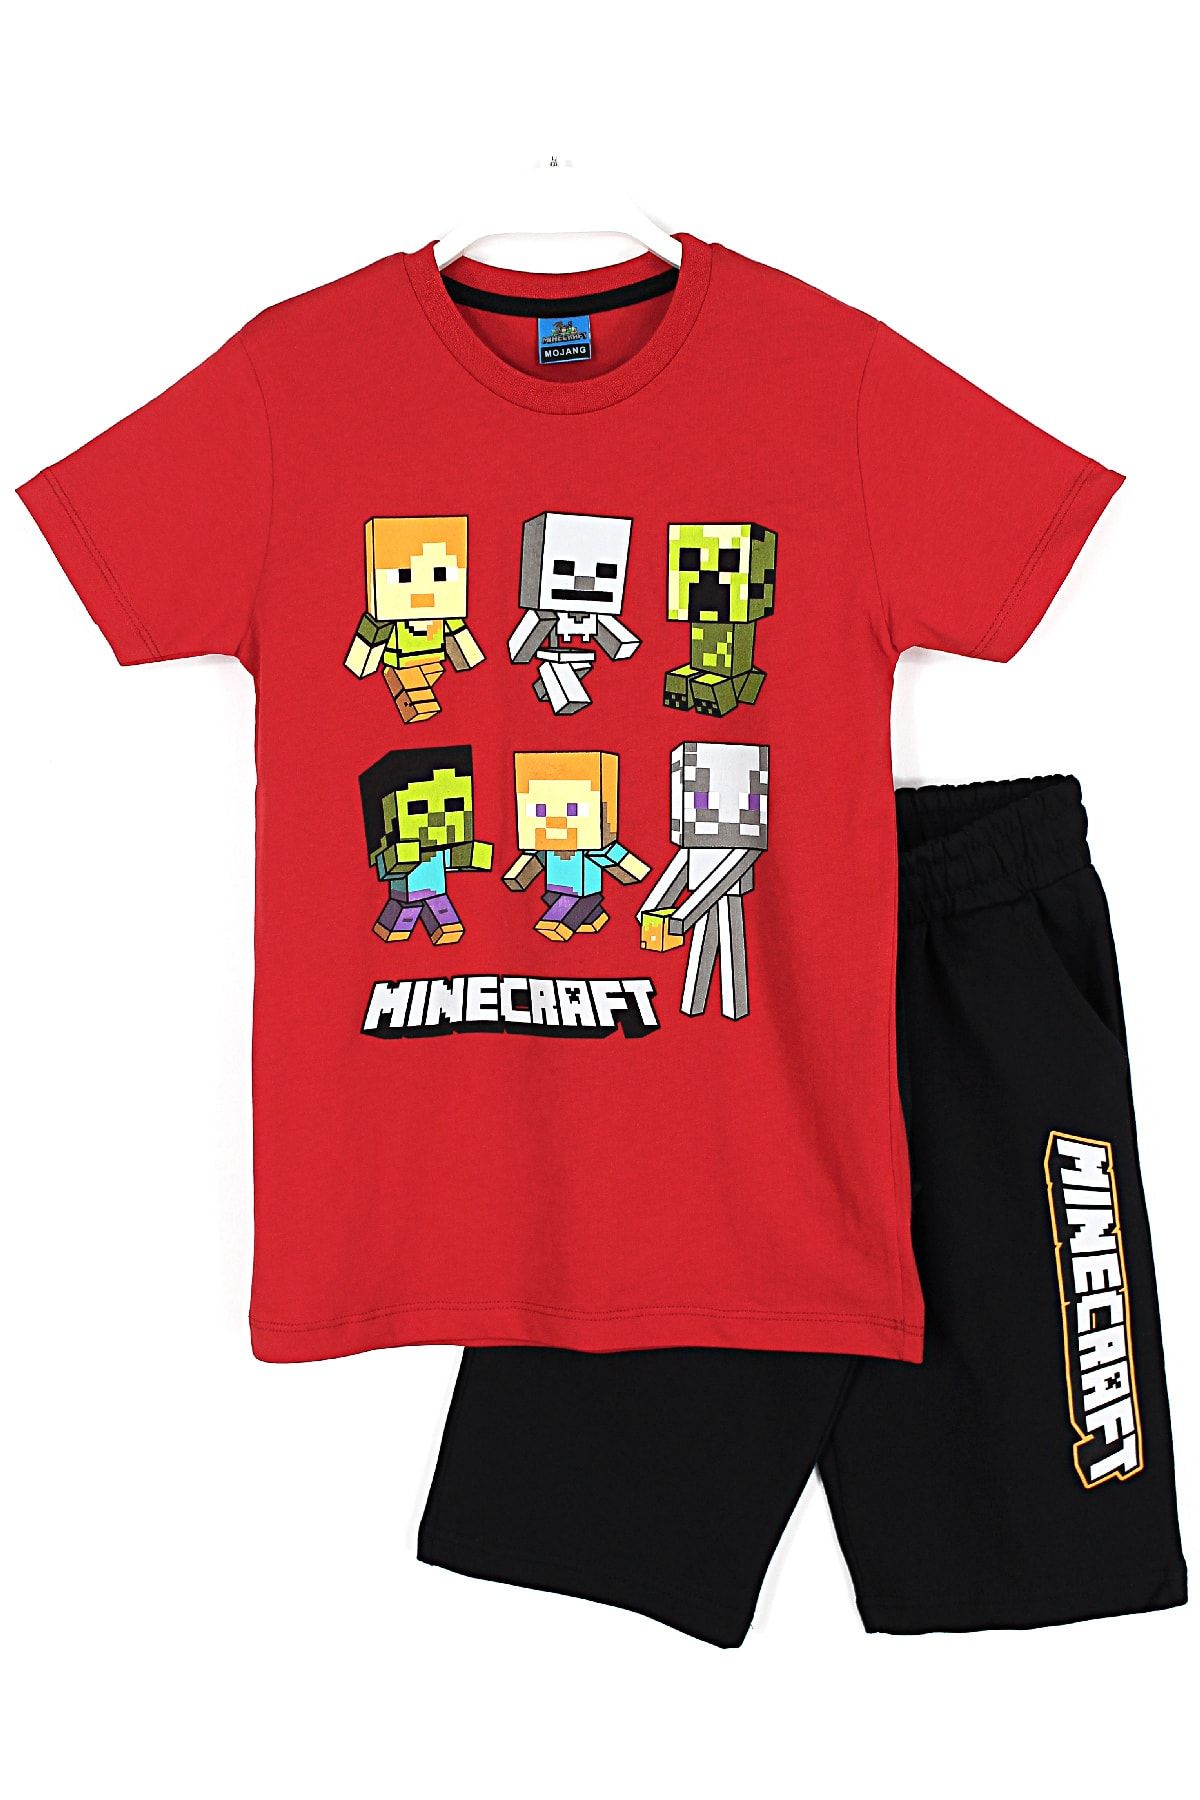 Minecraft Oyun Karakterleri Baskılı Erkek Çocuk T-shirt Kapri Takım 4 - 12 Yaş Kırmızı